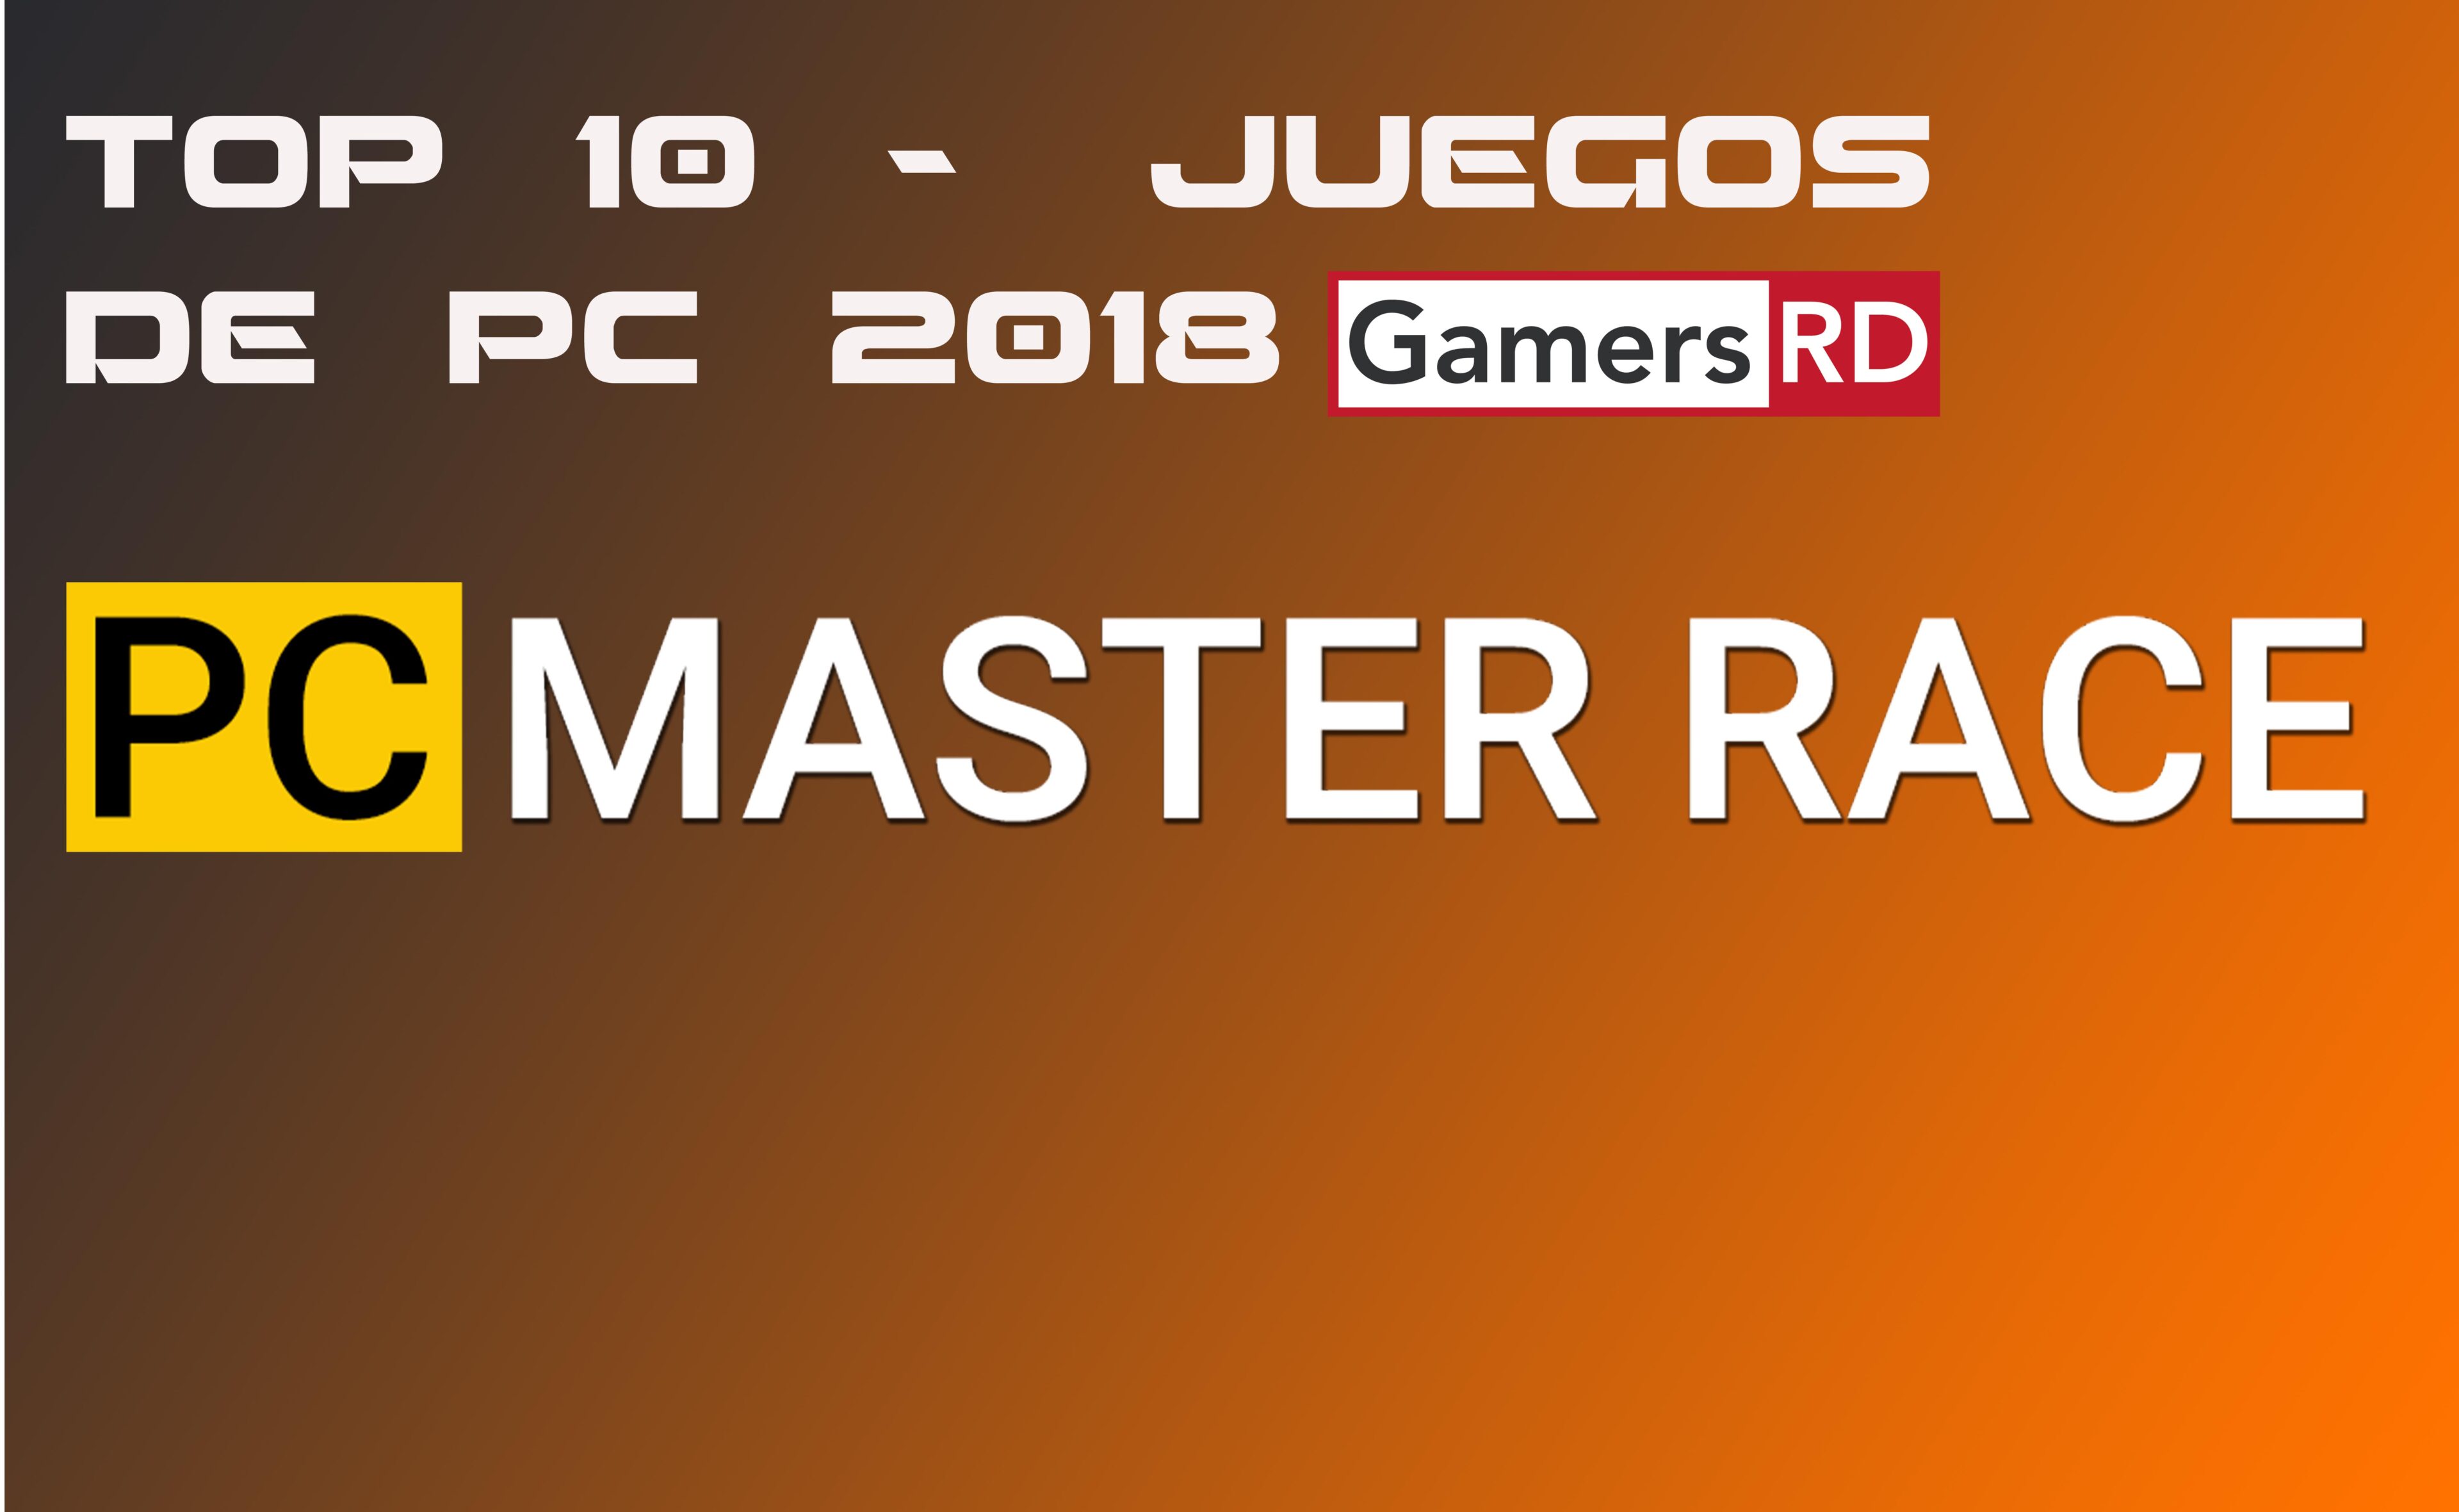 TOP 10 JUEGOS DE PC 2018 -GAMERSRD